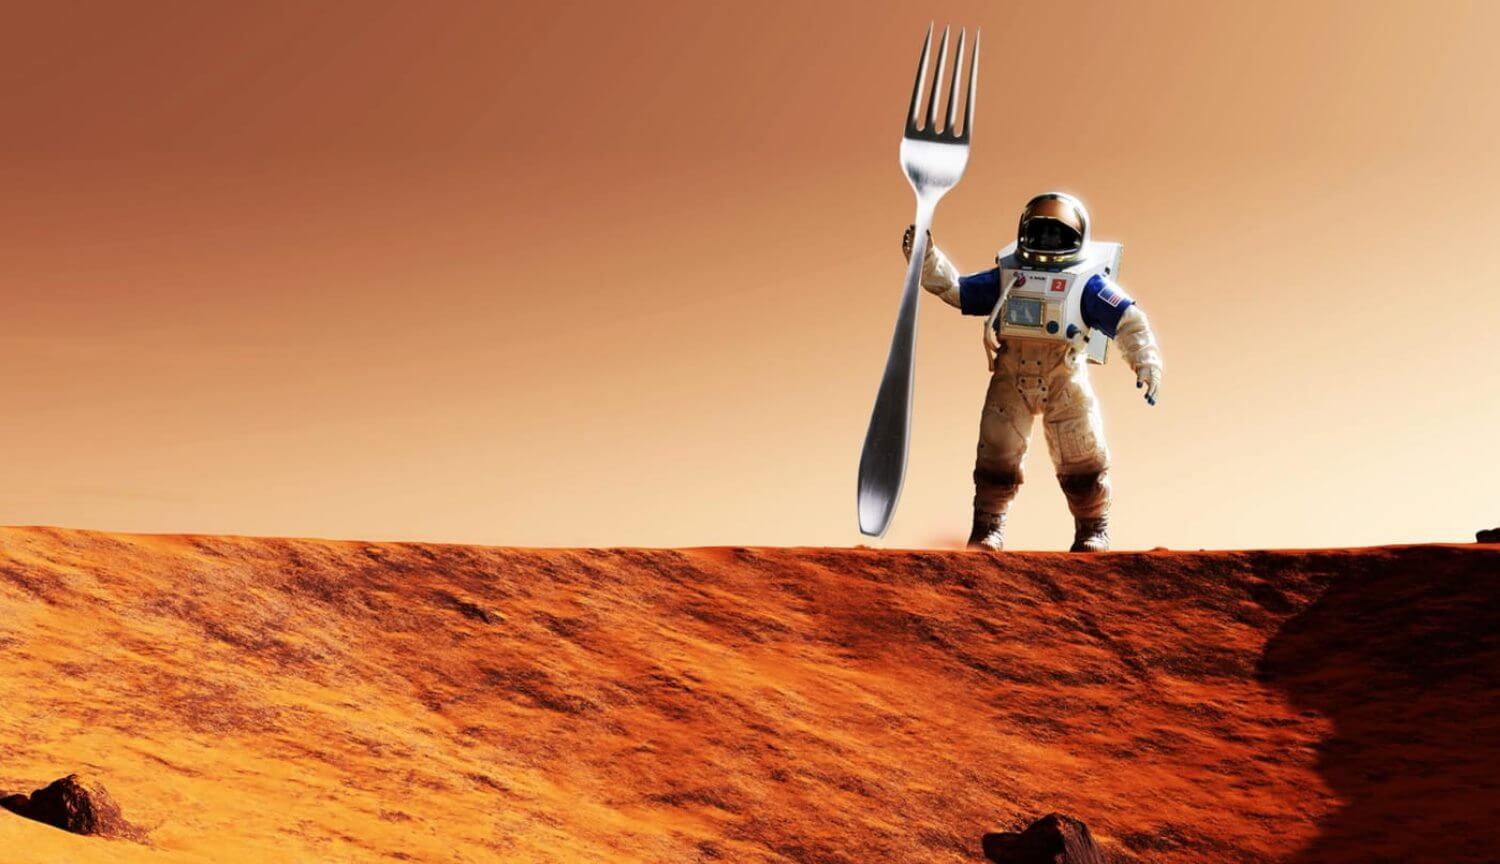 Не ішу керек және бар өмір сүру үшін Марс?